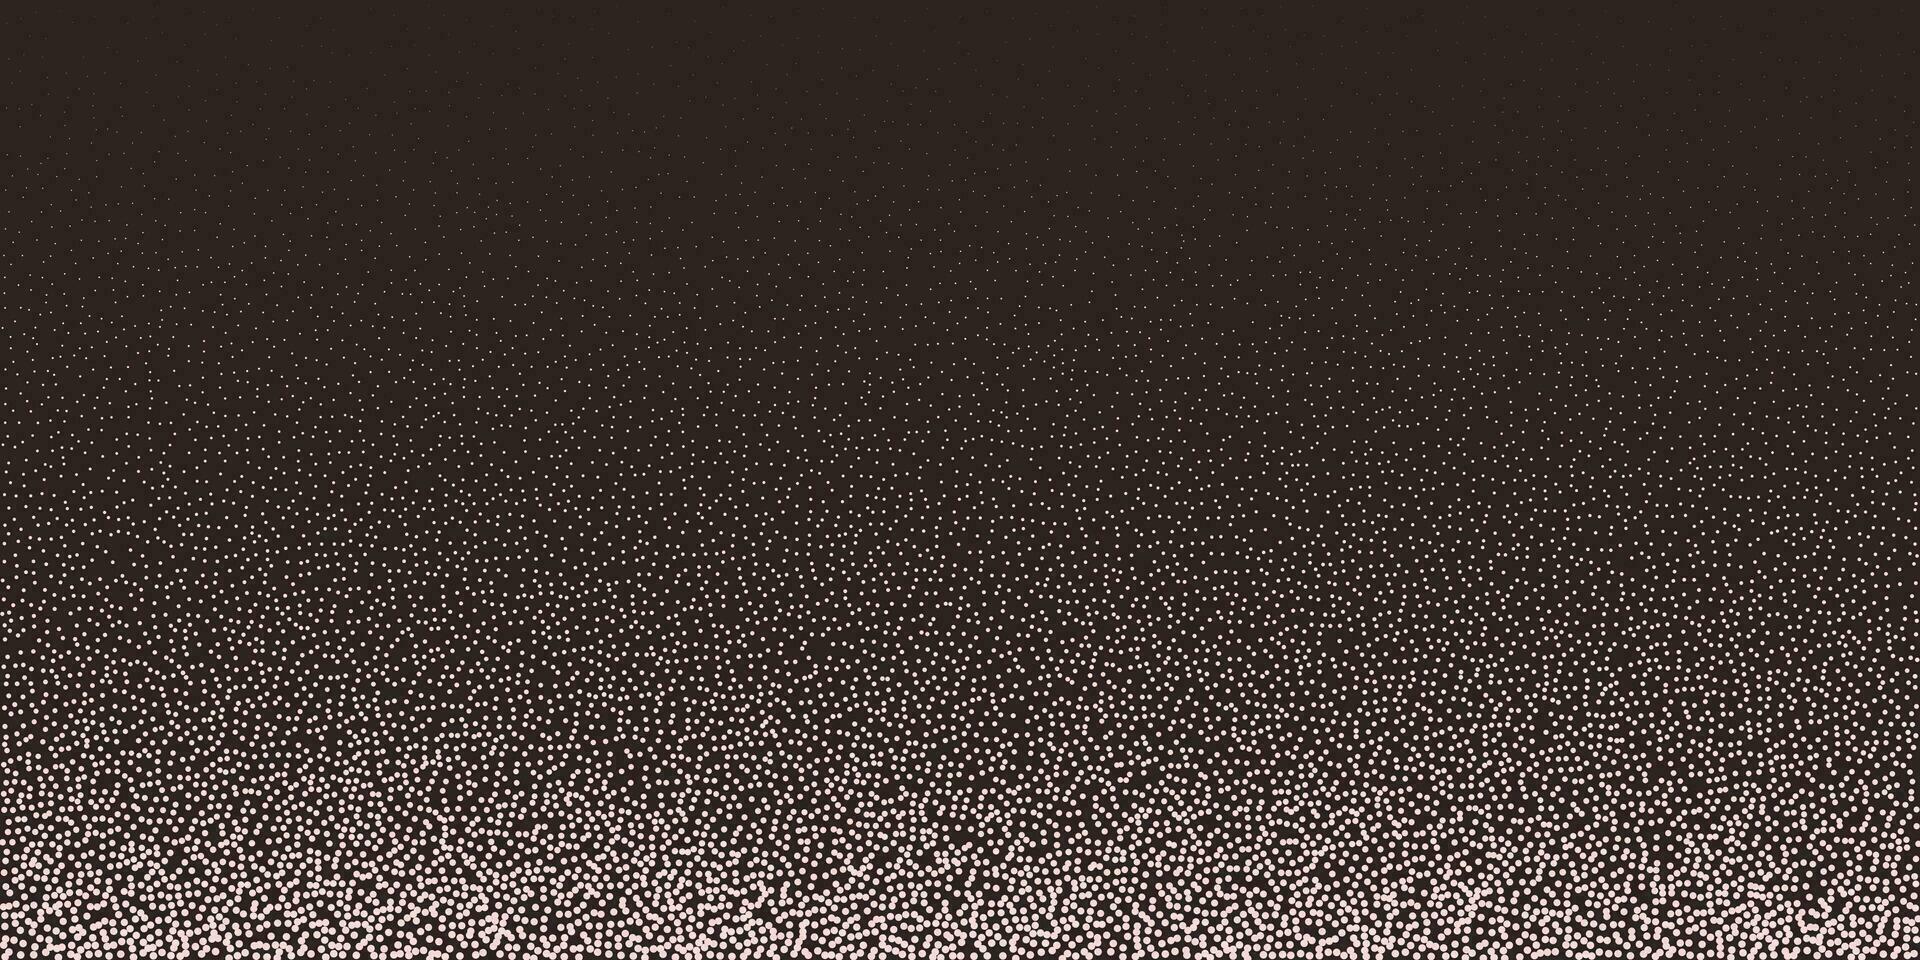 svartvit halvton grunge textur. abstrakt dotwork bakgrund med högljudd prickar och stippel lutning. vektor illustration av bedrövad texturerad design.